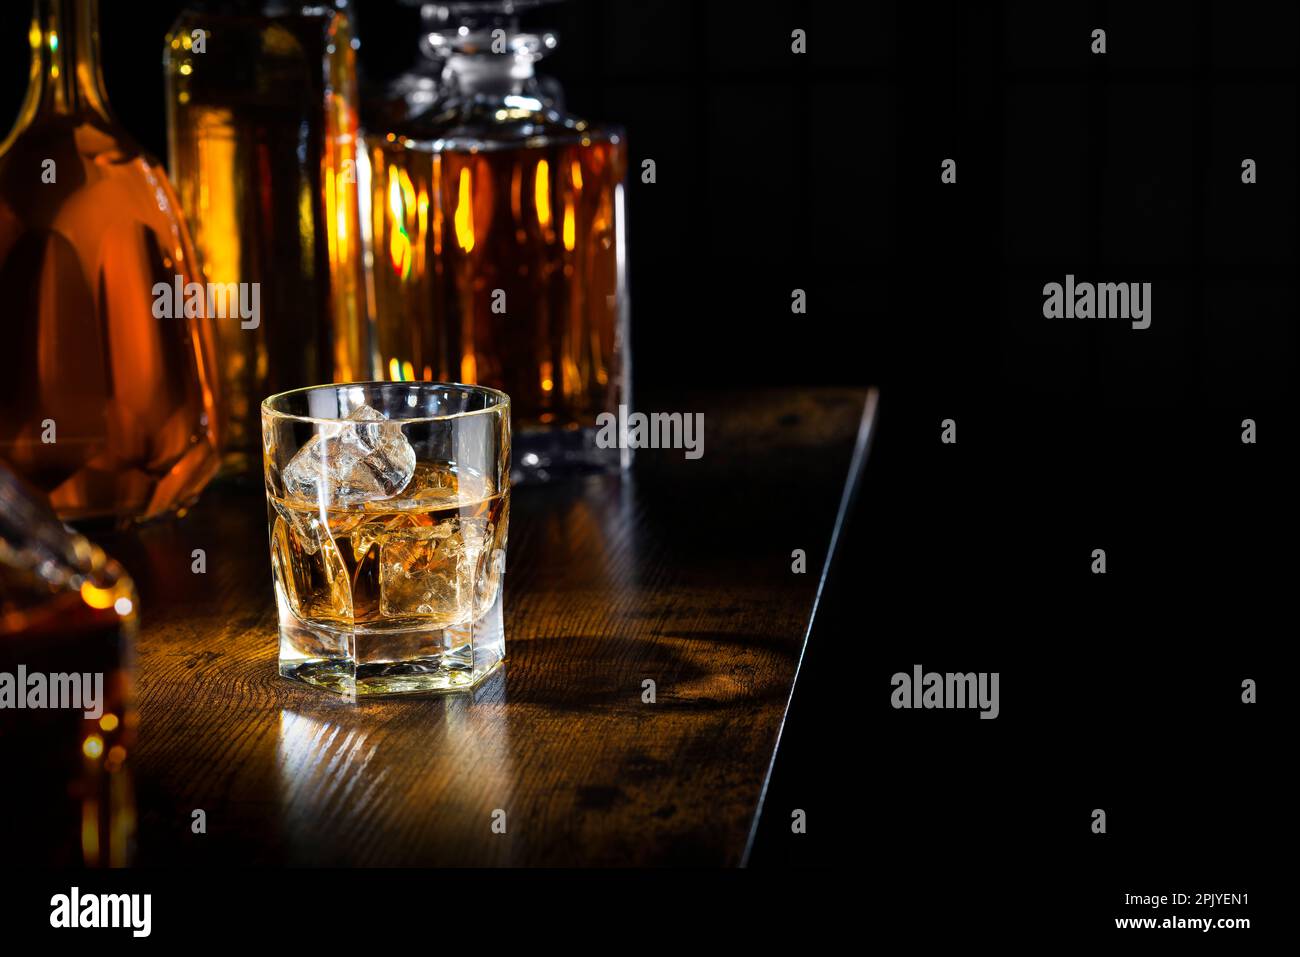 Glas of Whisky sur un comptoir Banque D'Images